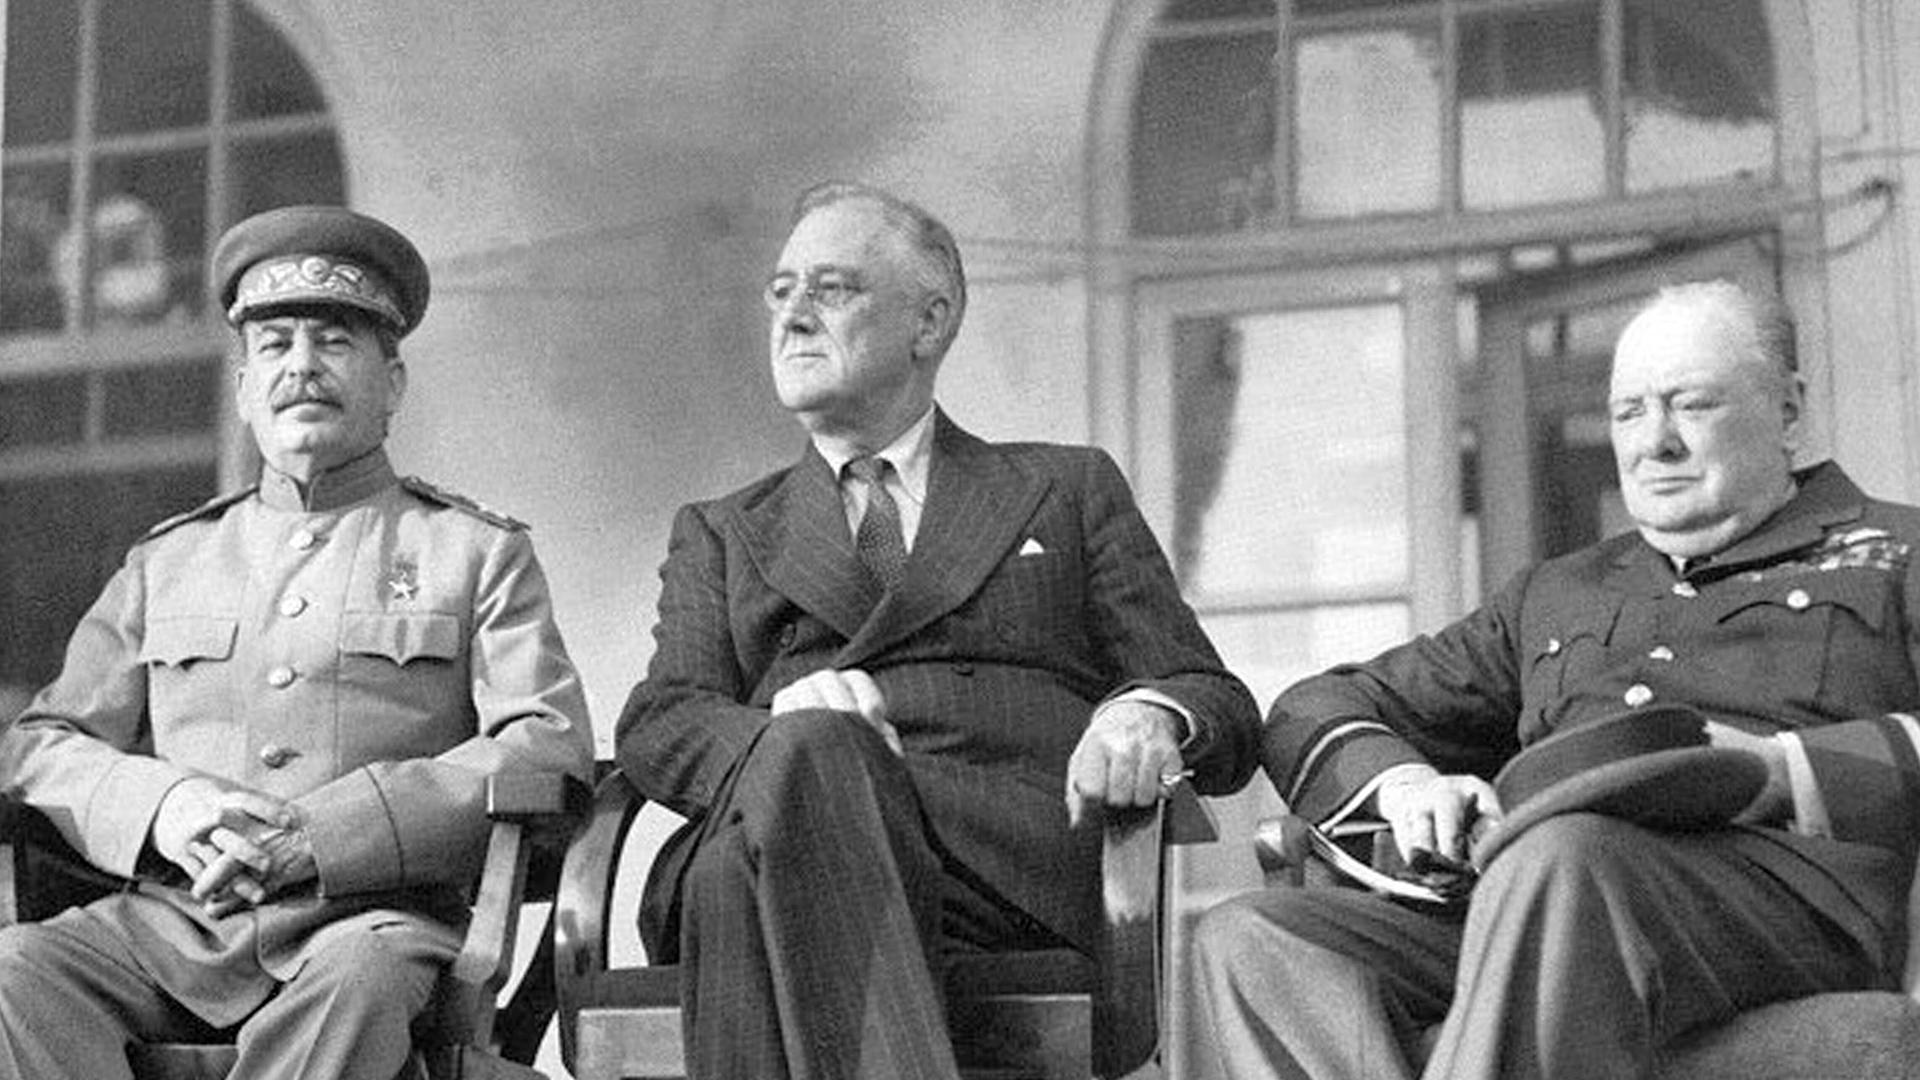 Die Schwarzweißfotografie zeigt Josef Stalin, Franklin D. Roosevelt und Winston Churchill auf Stühlen sitzend auf einer Empore. 